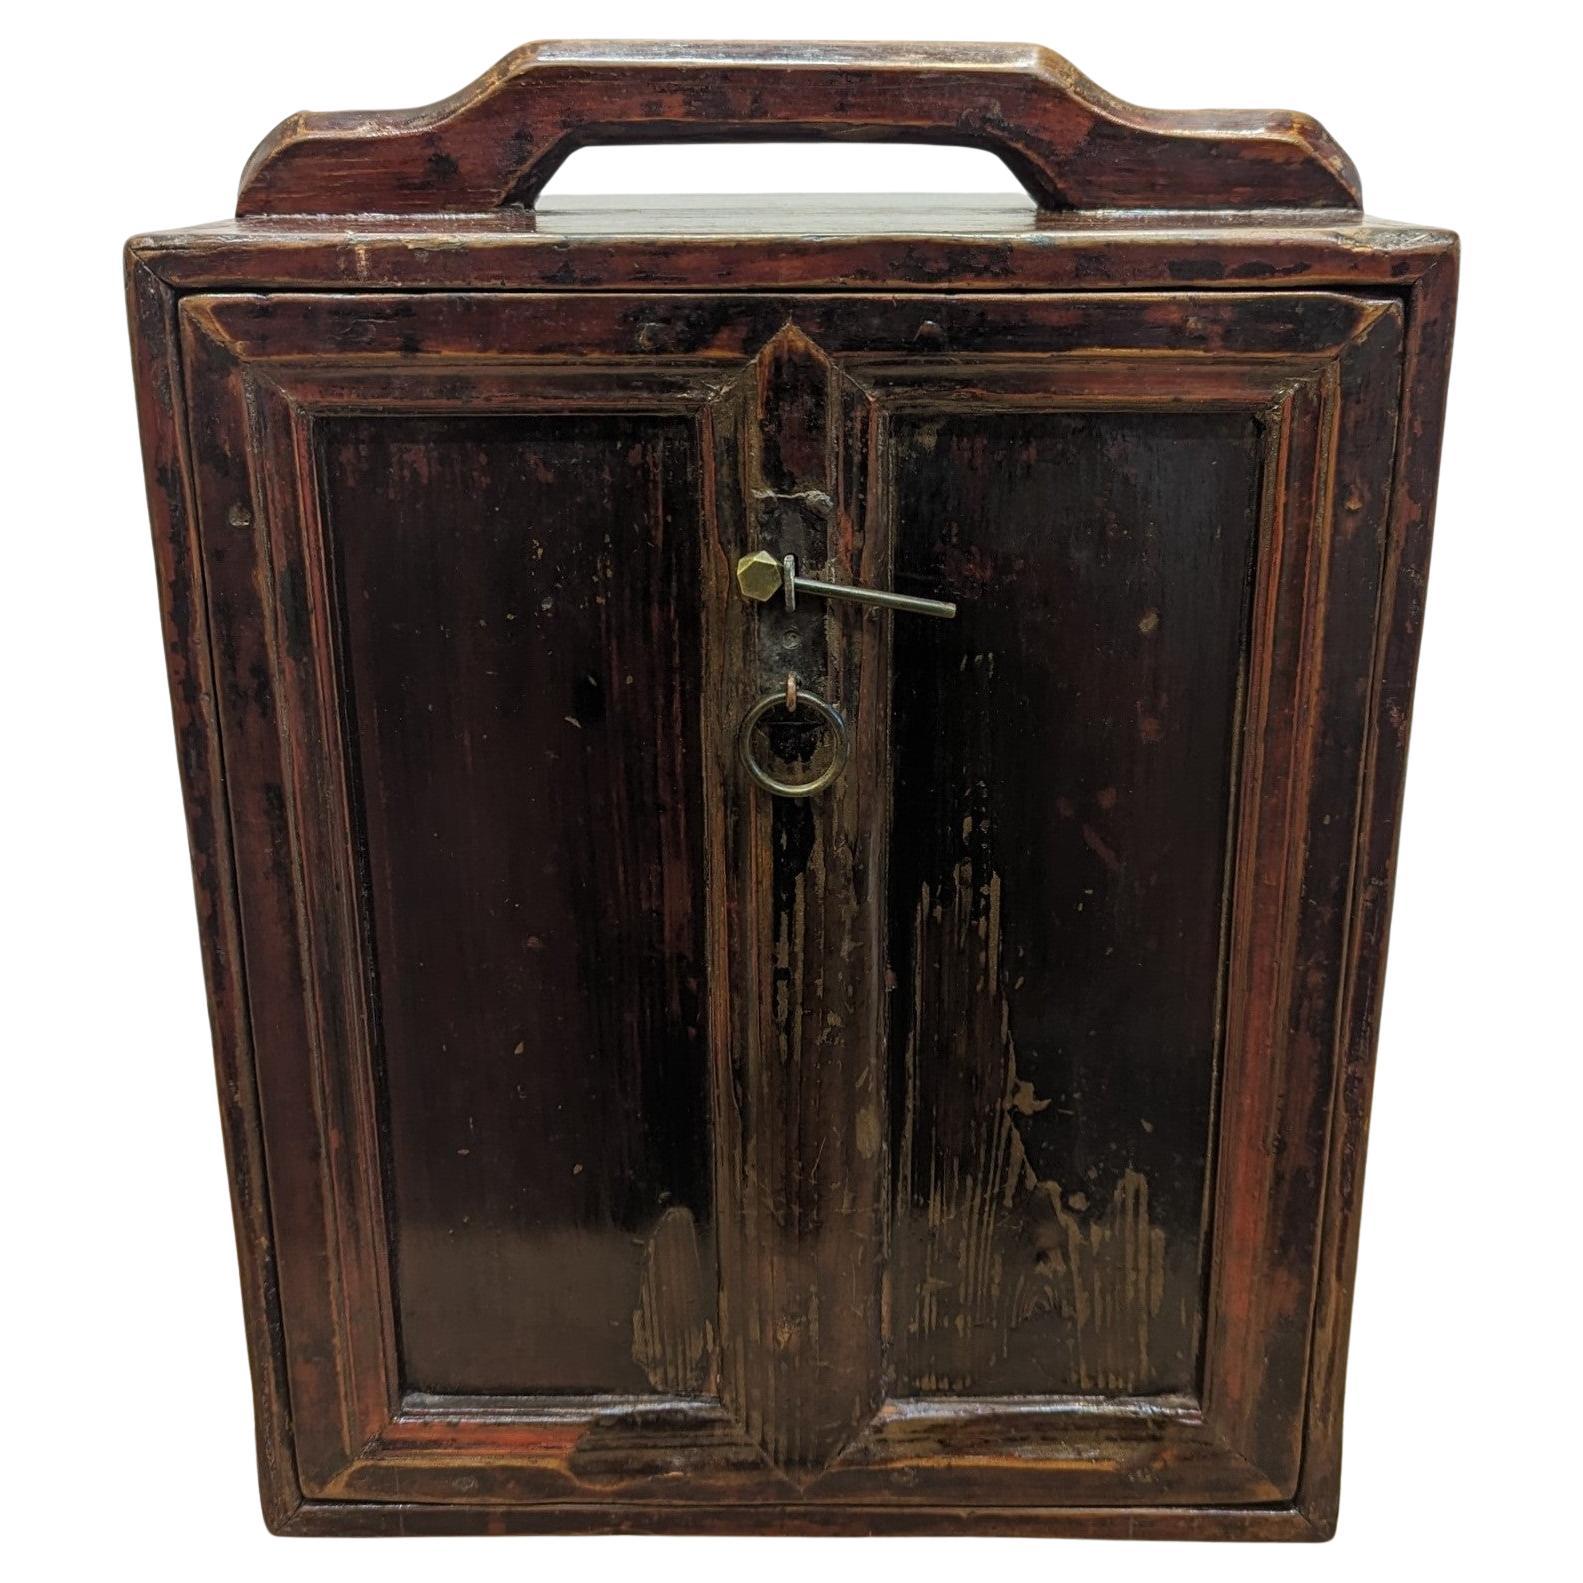 Apothekenkoffer aus dem 19. Jahrhundert